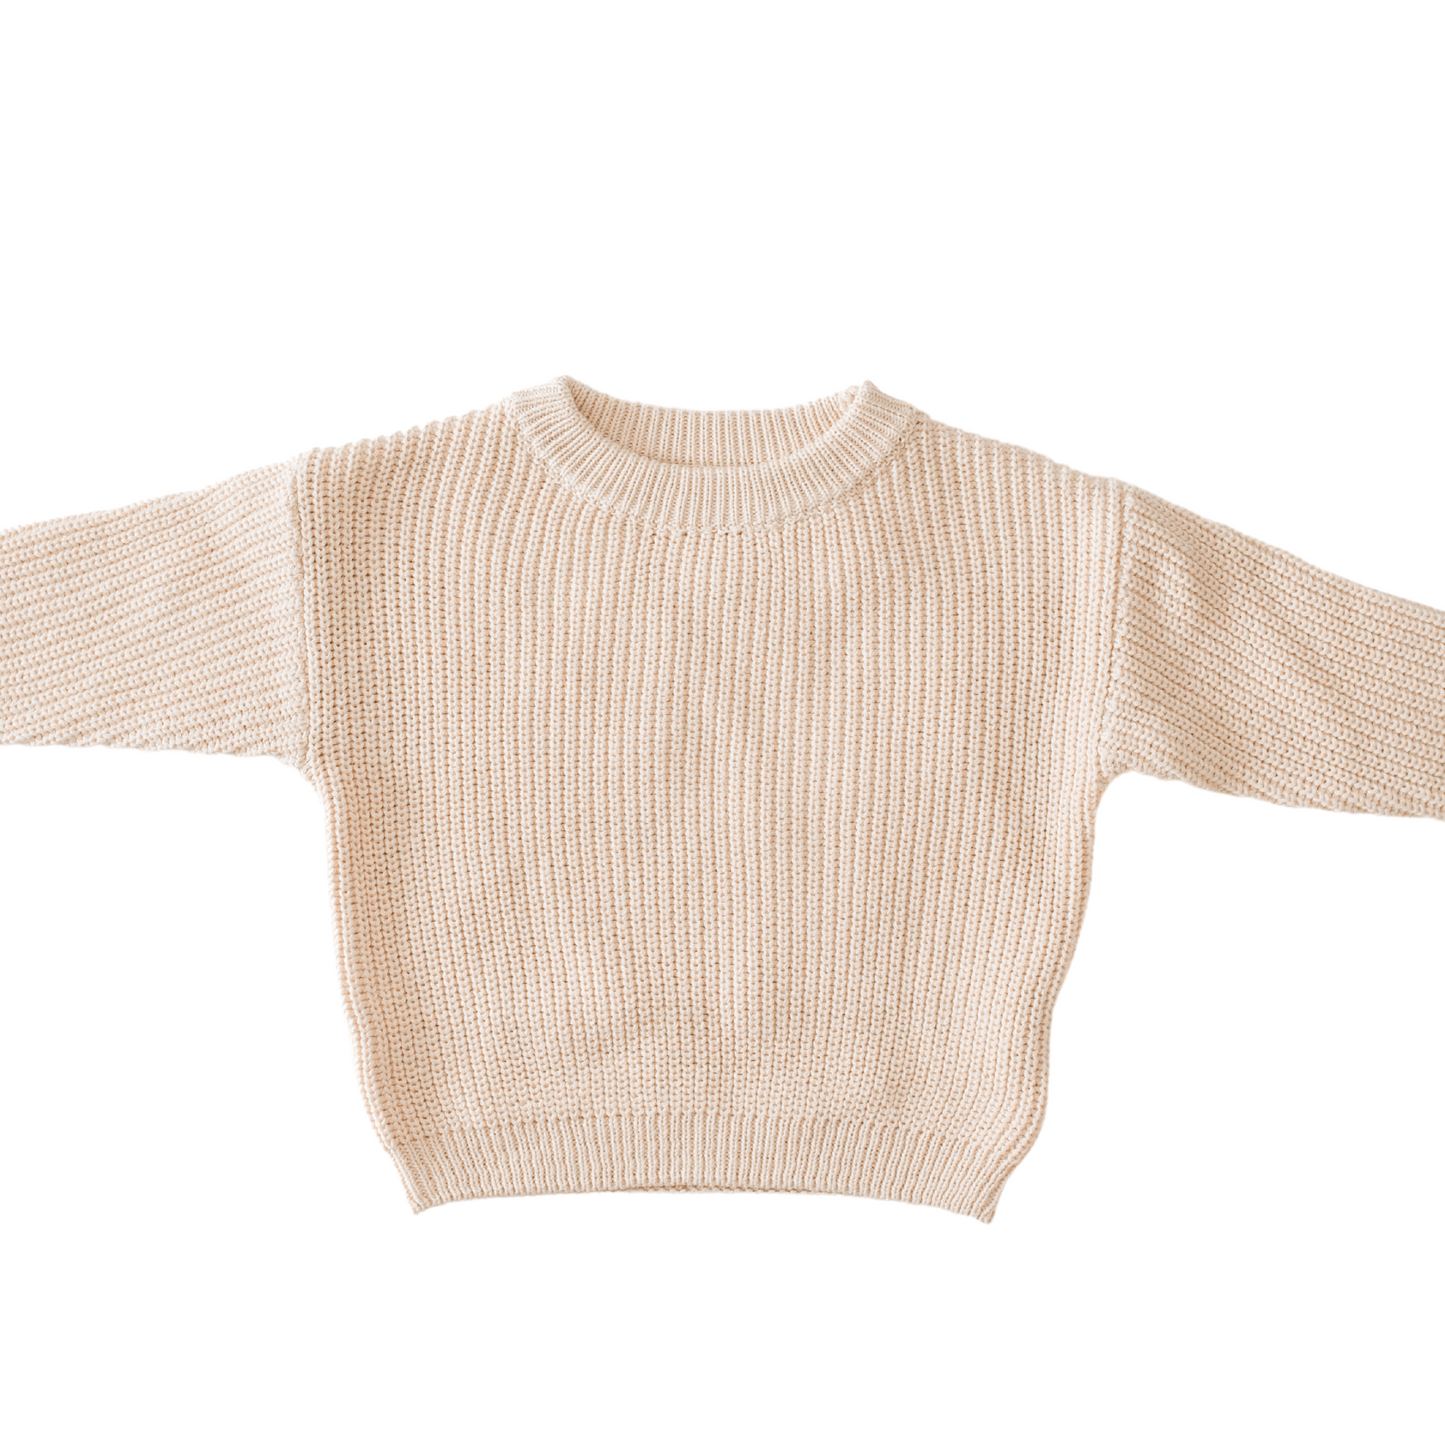 Grayling Knit Sweater